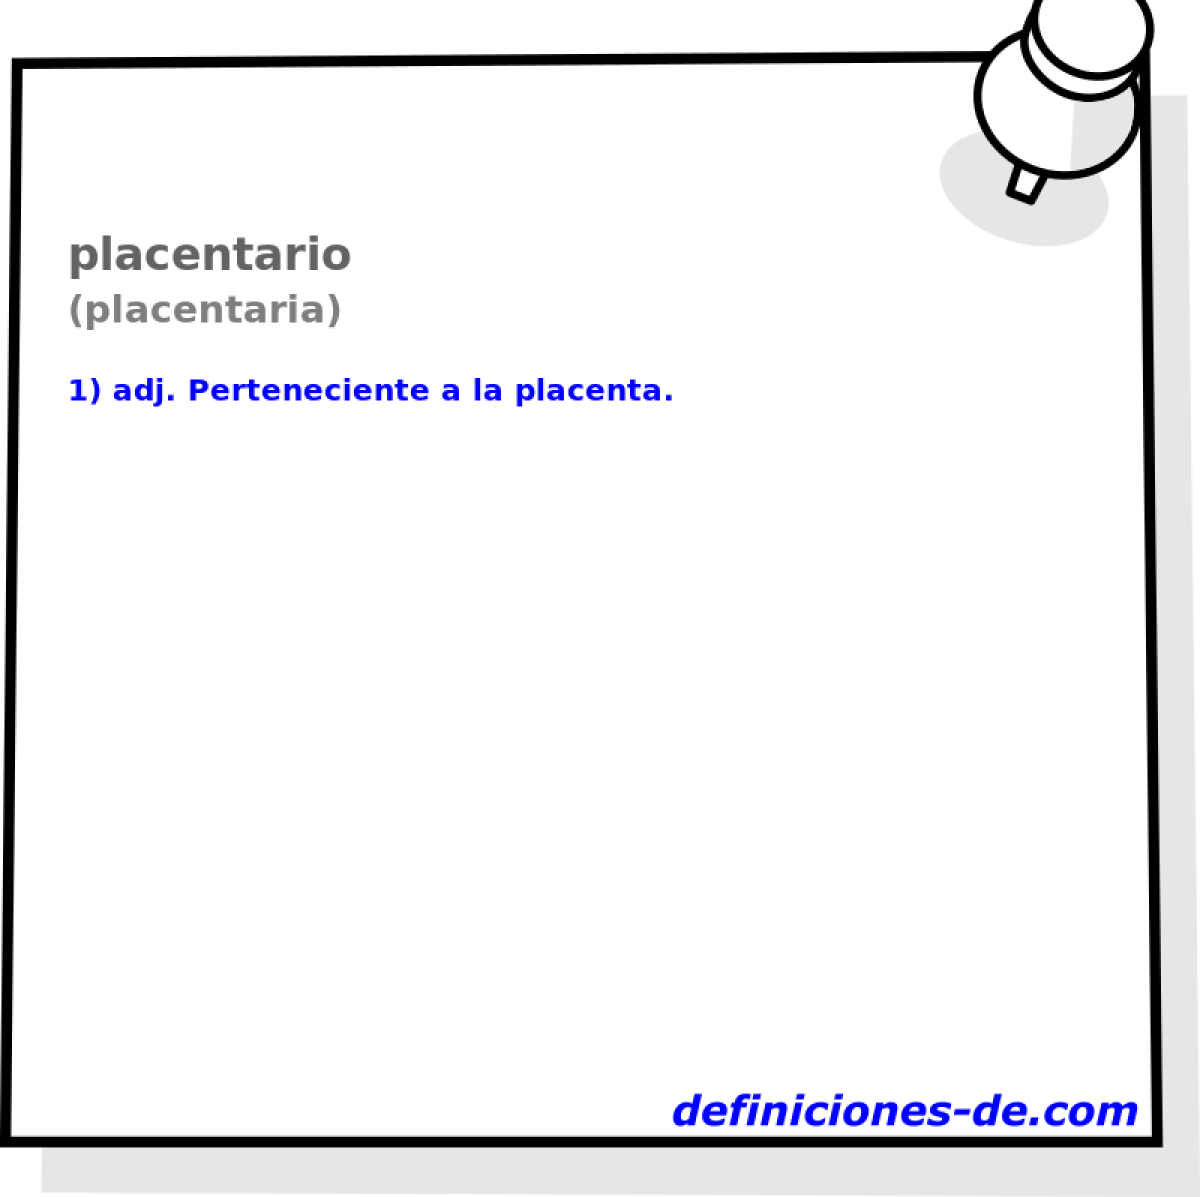 placentario (placentaria)